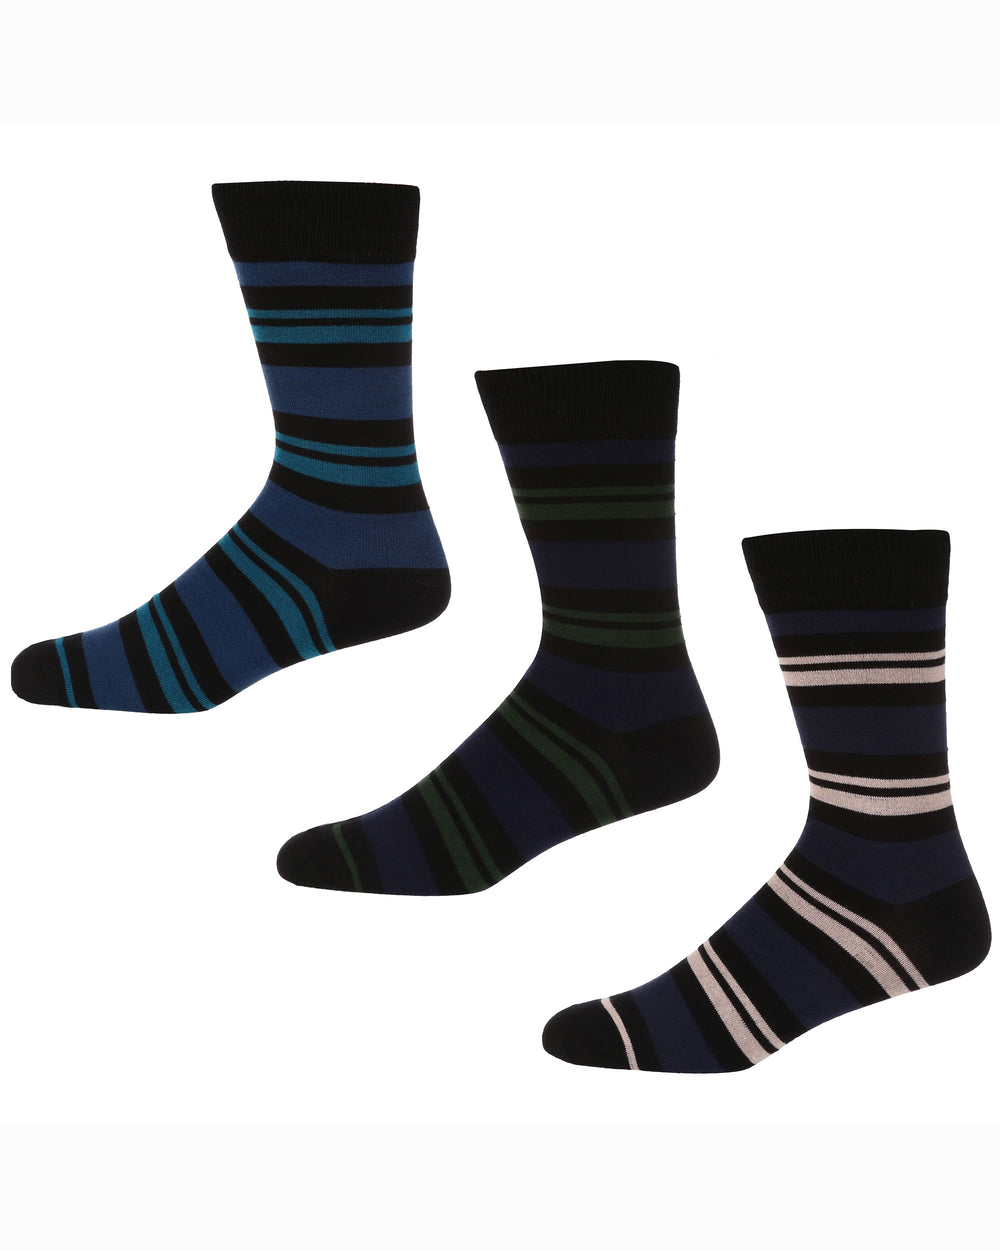 Roberto Men's 3-Pack Socks - Blue/Black/Green/Cream